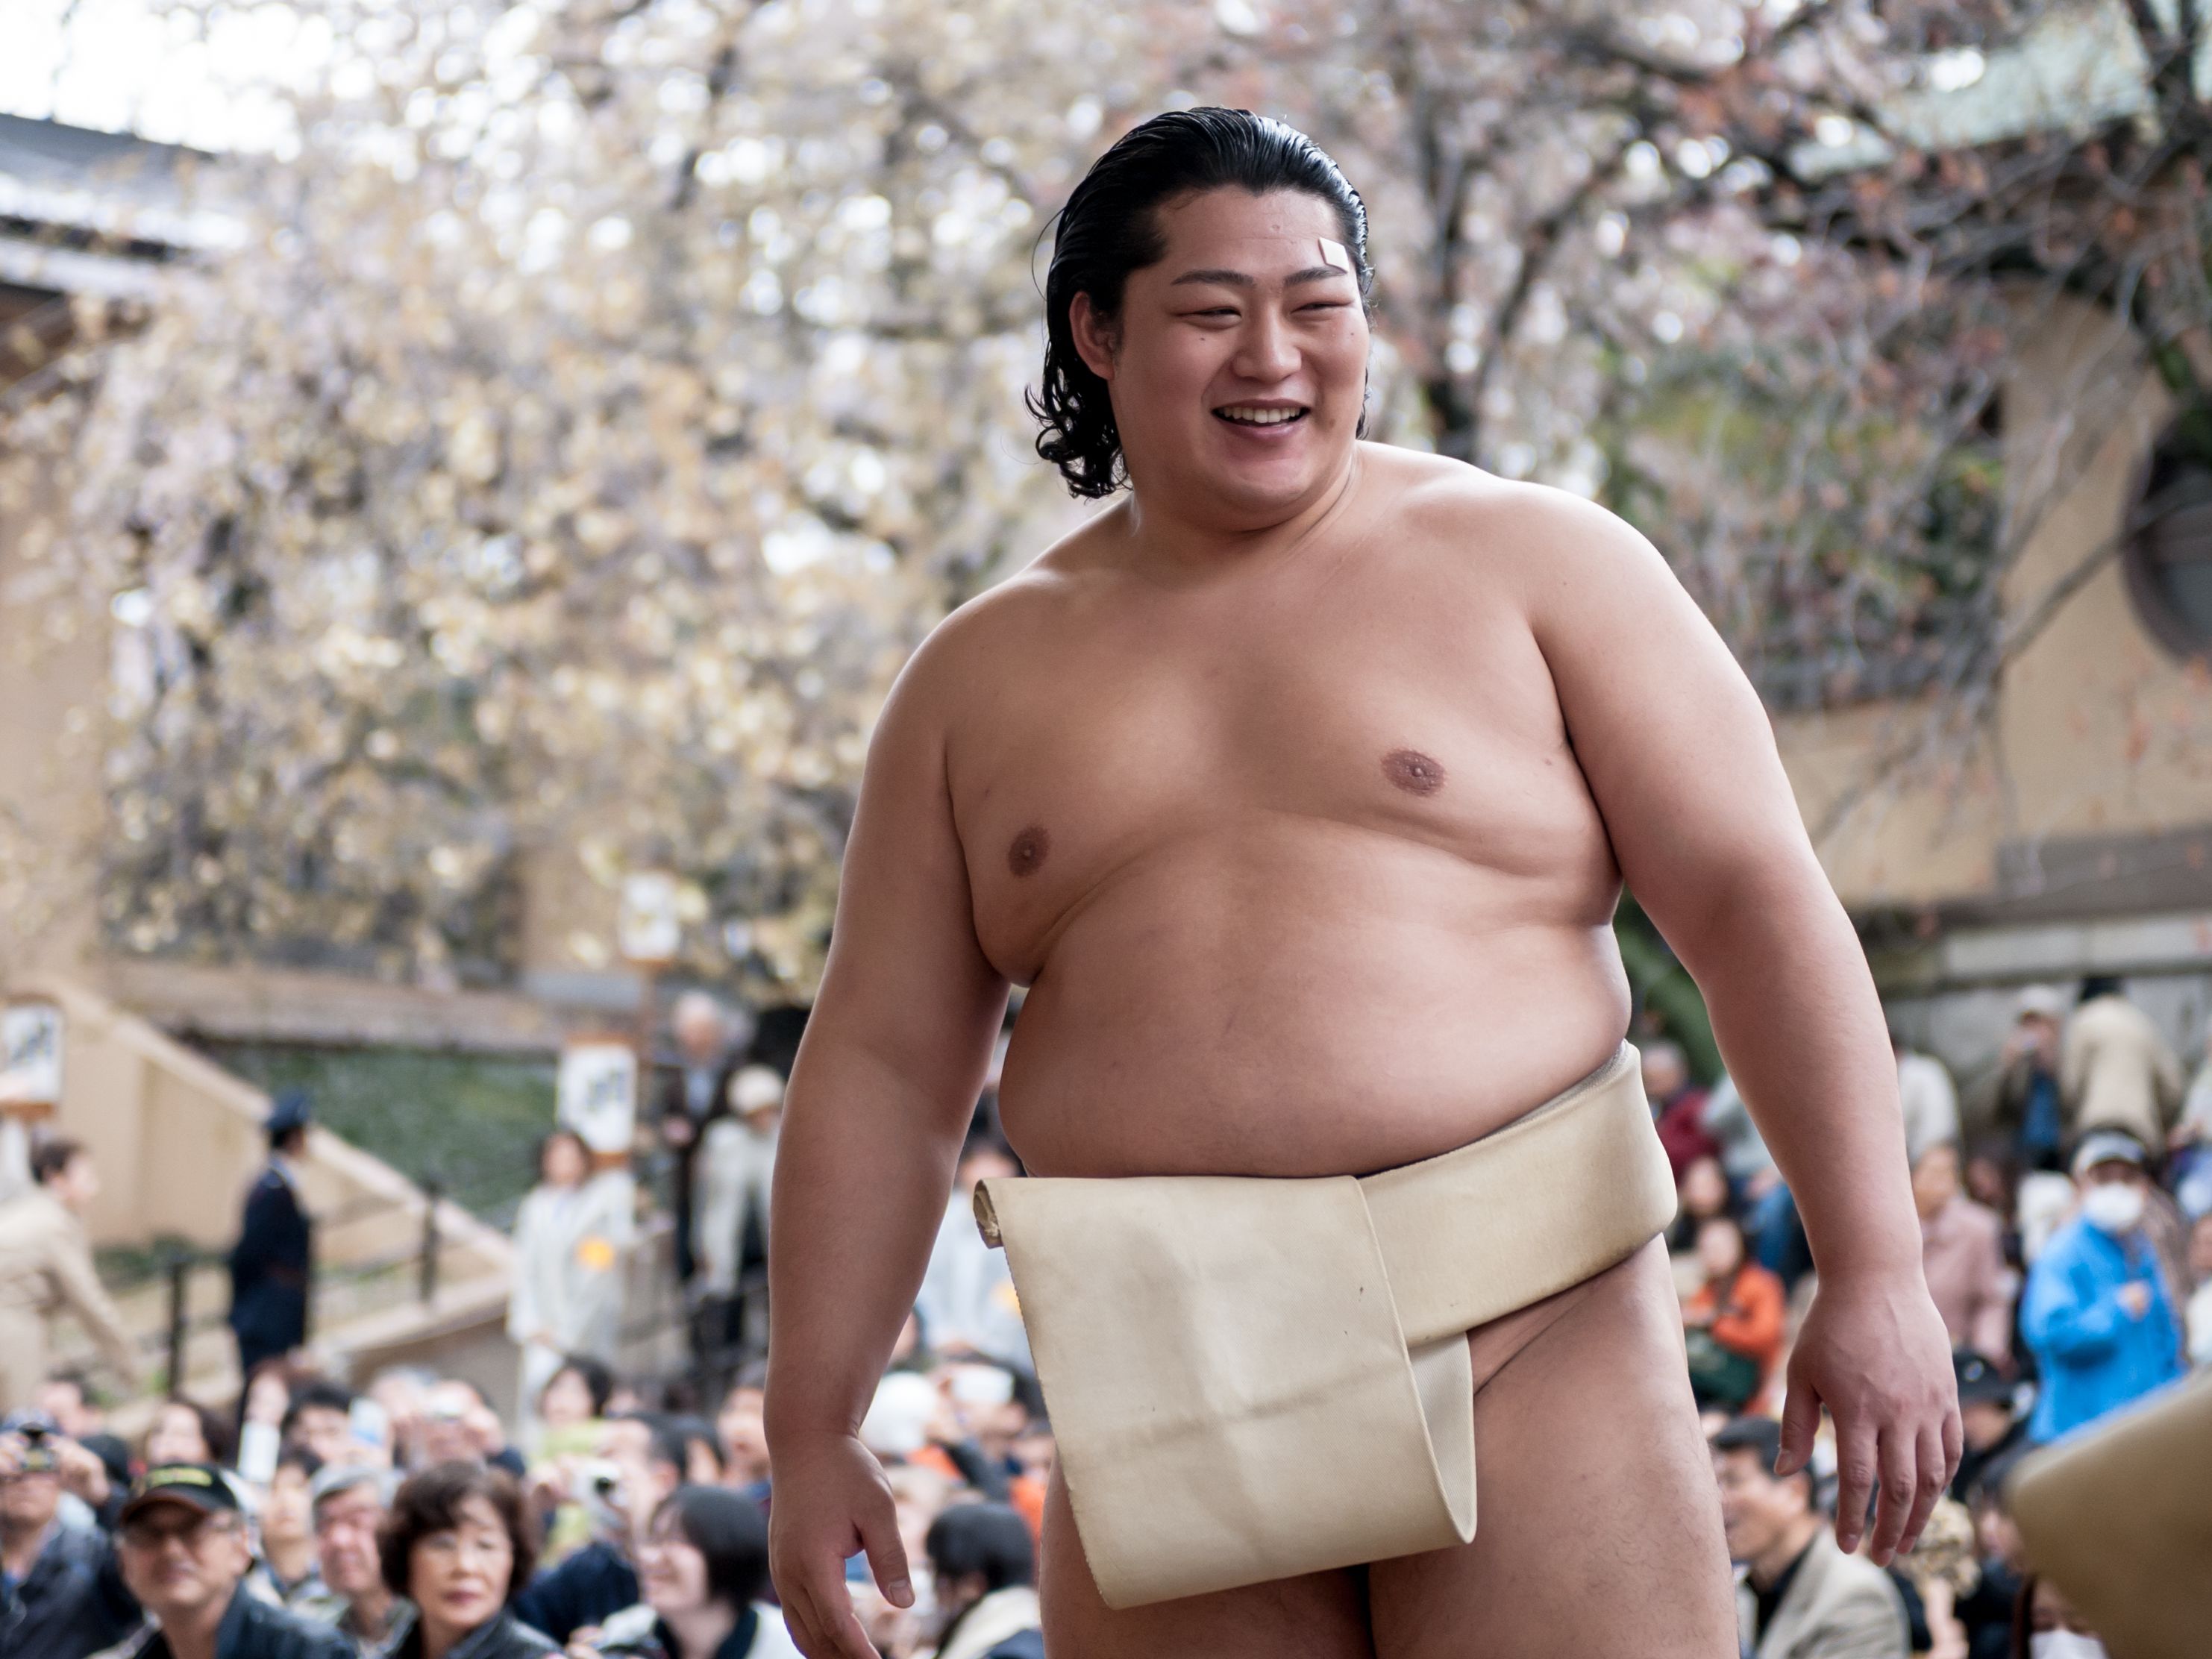 Bergaji Ratusan Juta, Ternyata Atlet Sumo Jepang juga Punya Sisi Gelapnya